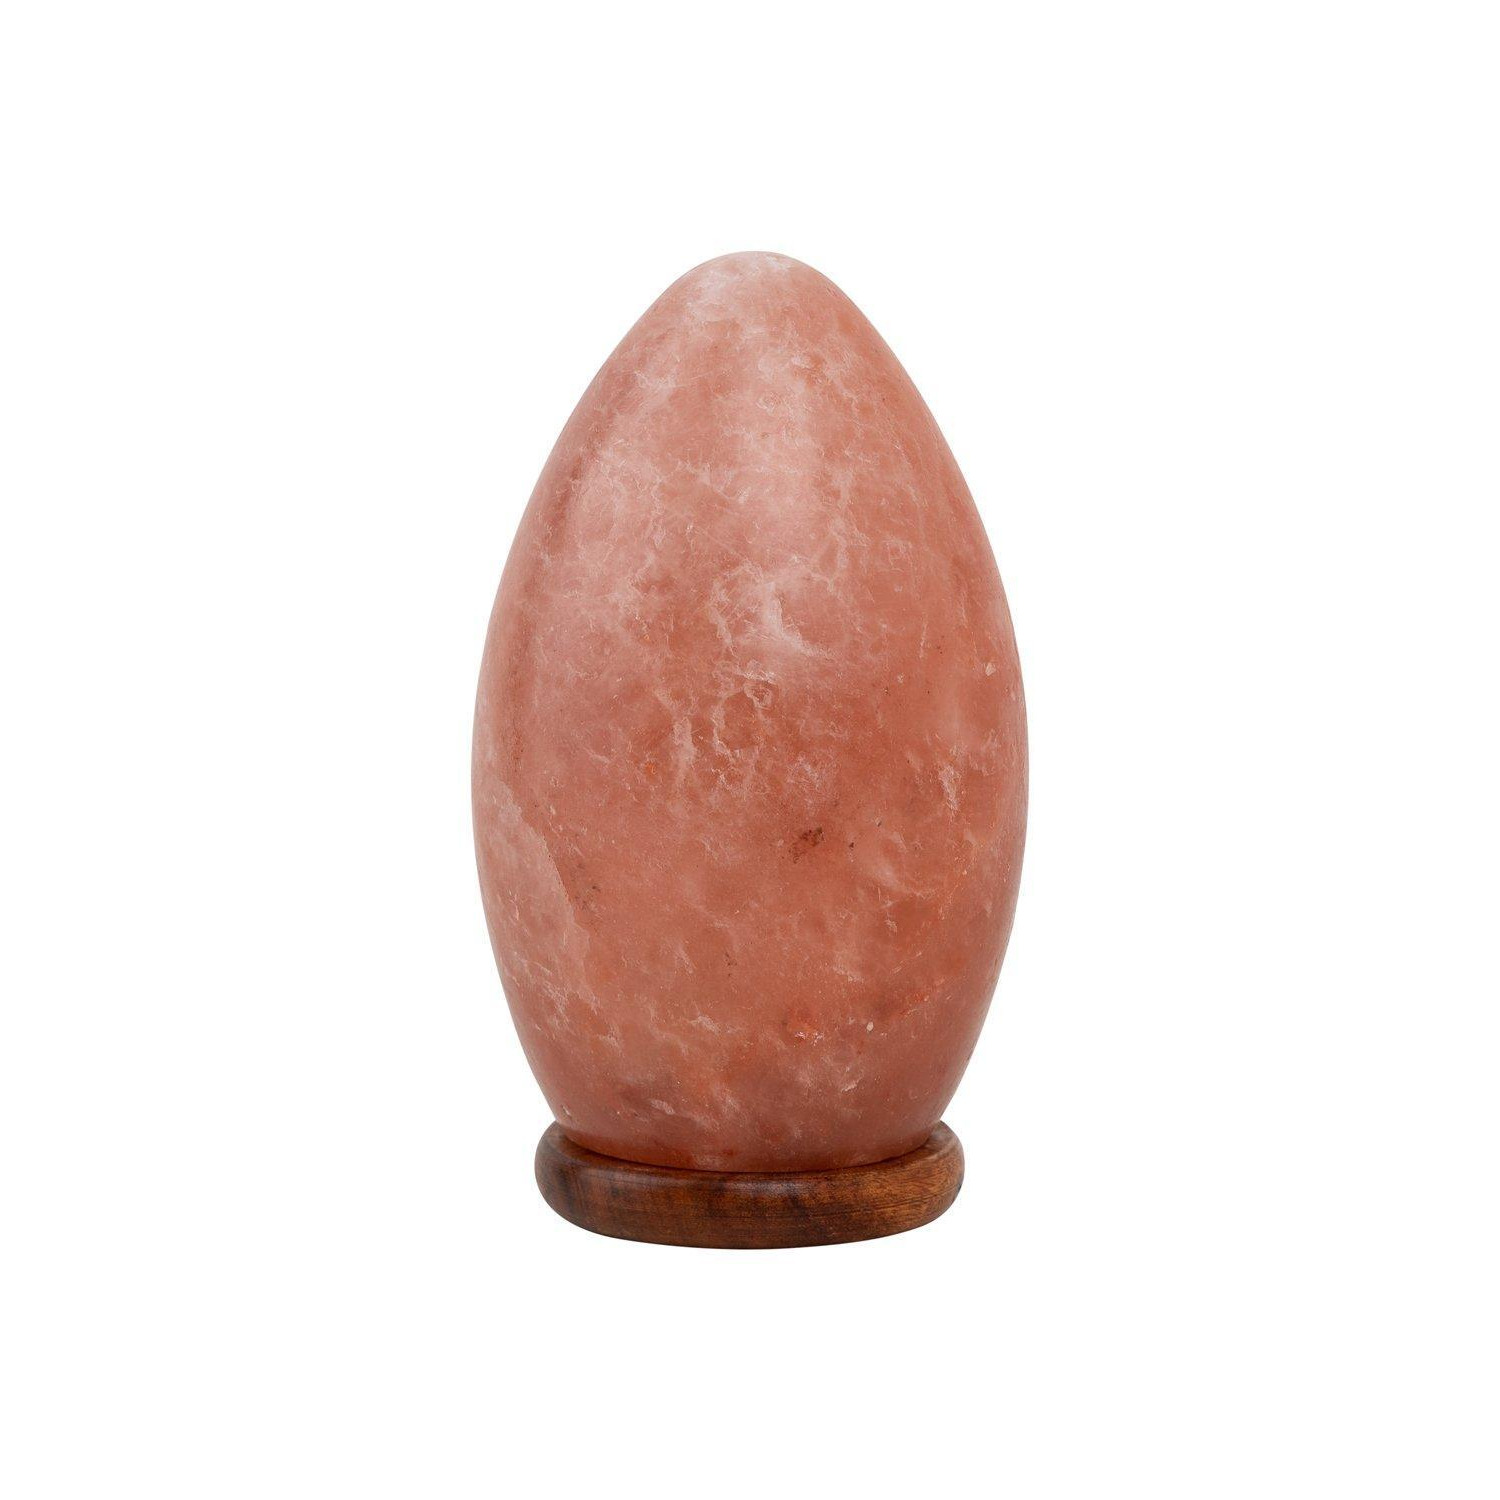 Egg Shaped Rock Salt Lamp with Wooden Base 20cm - image 1